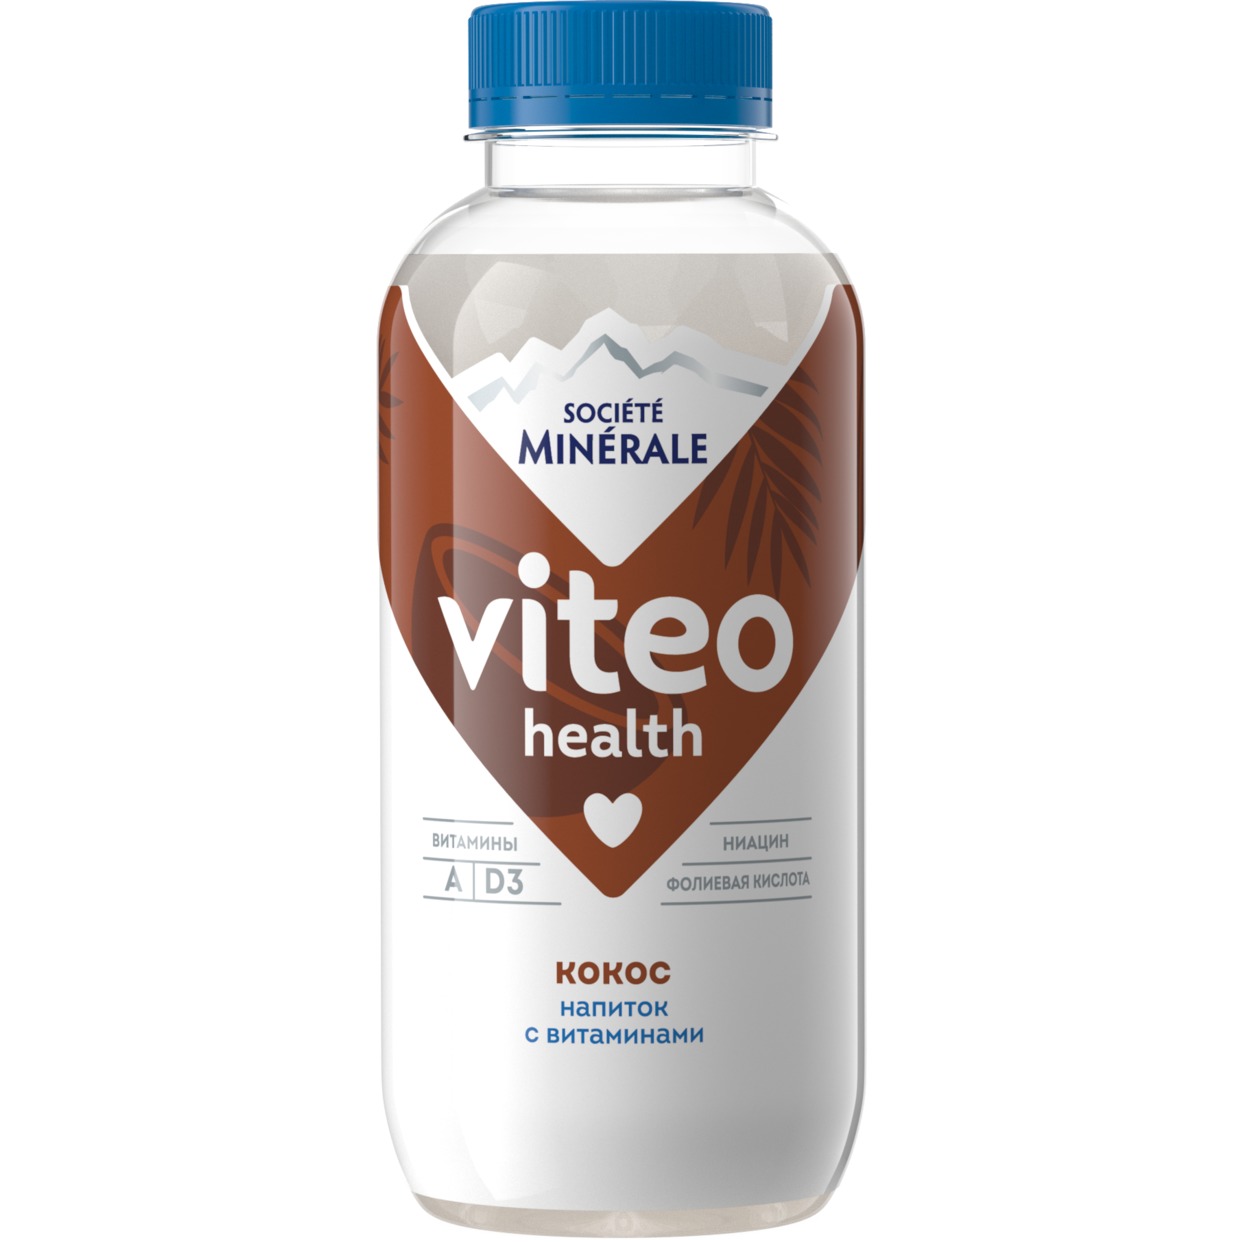 Напиток безалкогольный негазированный торговой марки «Societe Minerale Viteo» с витаминами вкус кокос 0,4 по акции в Пятерочке